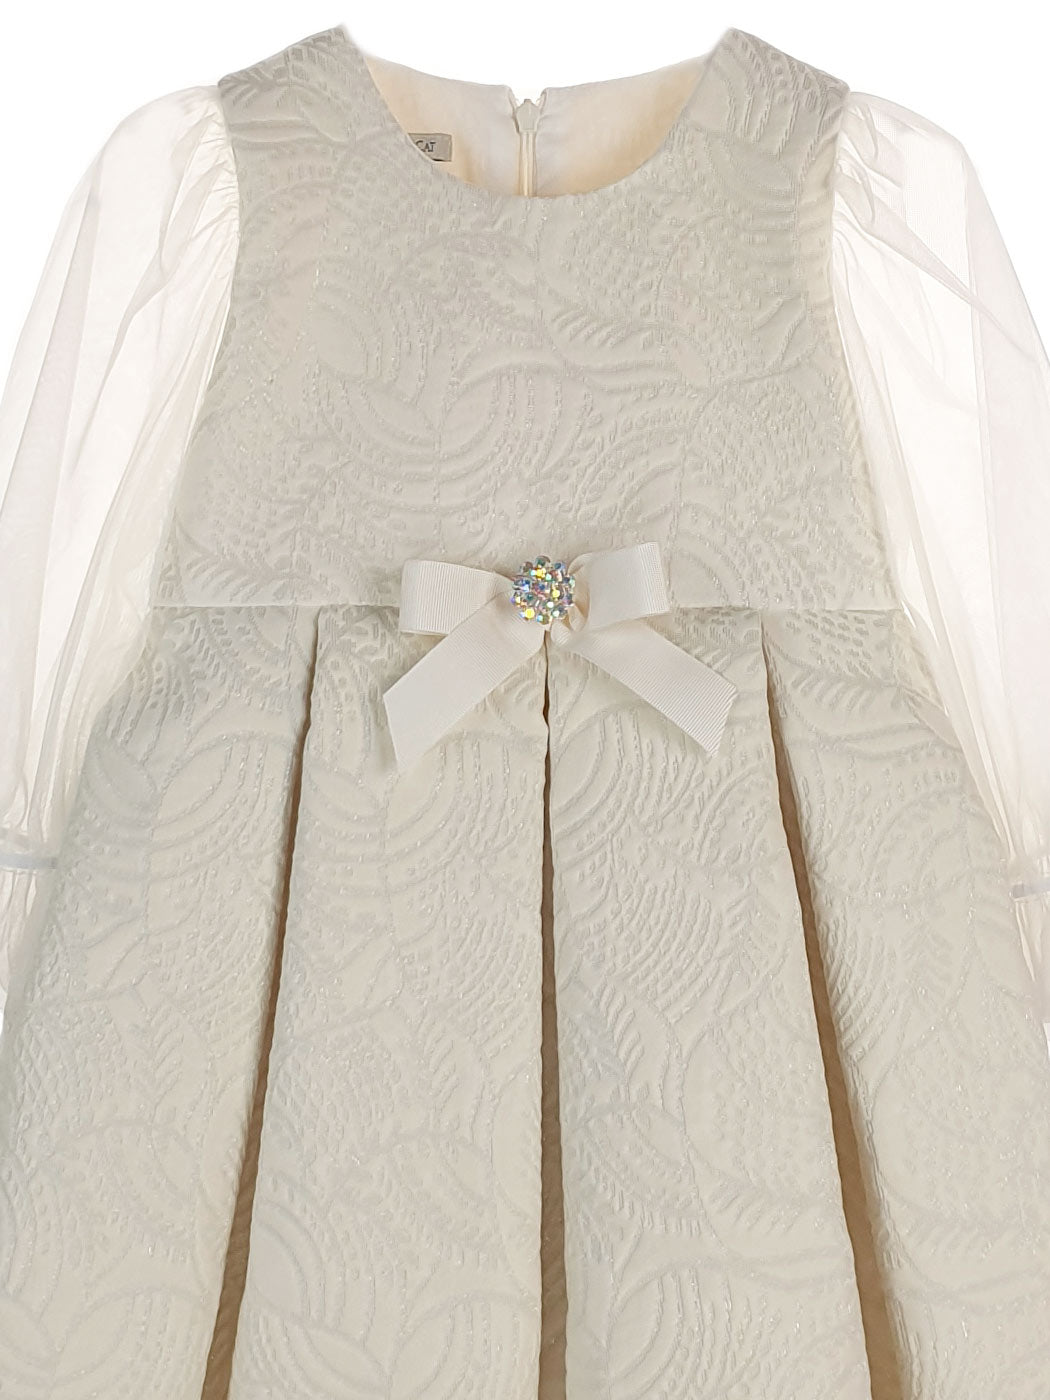 Baby's Brocade Dress with tulle sleeve - EDUARDA Ecru